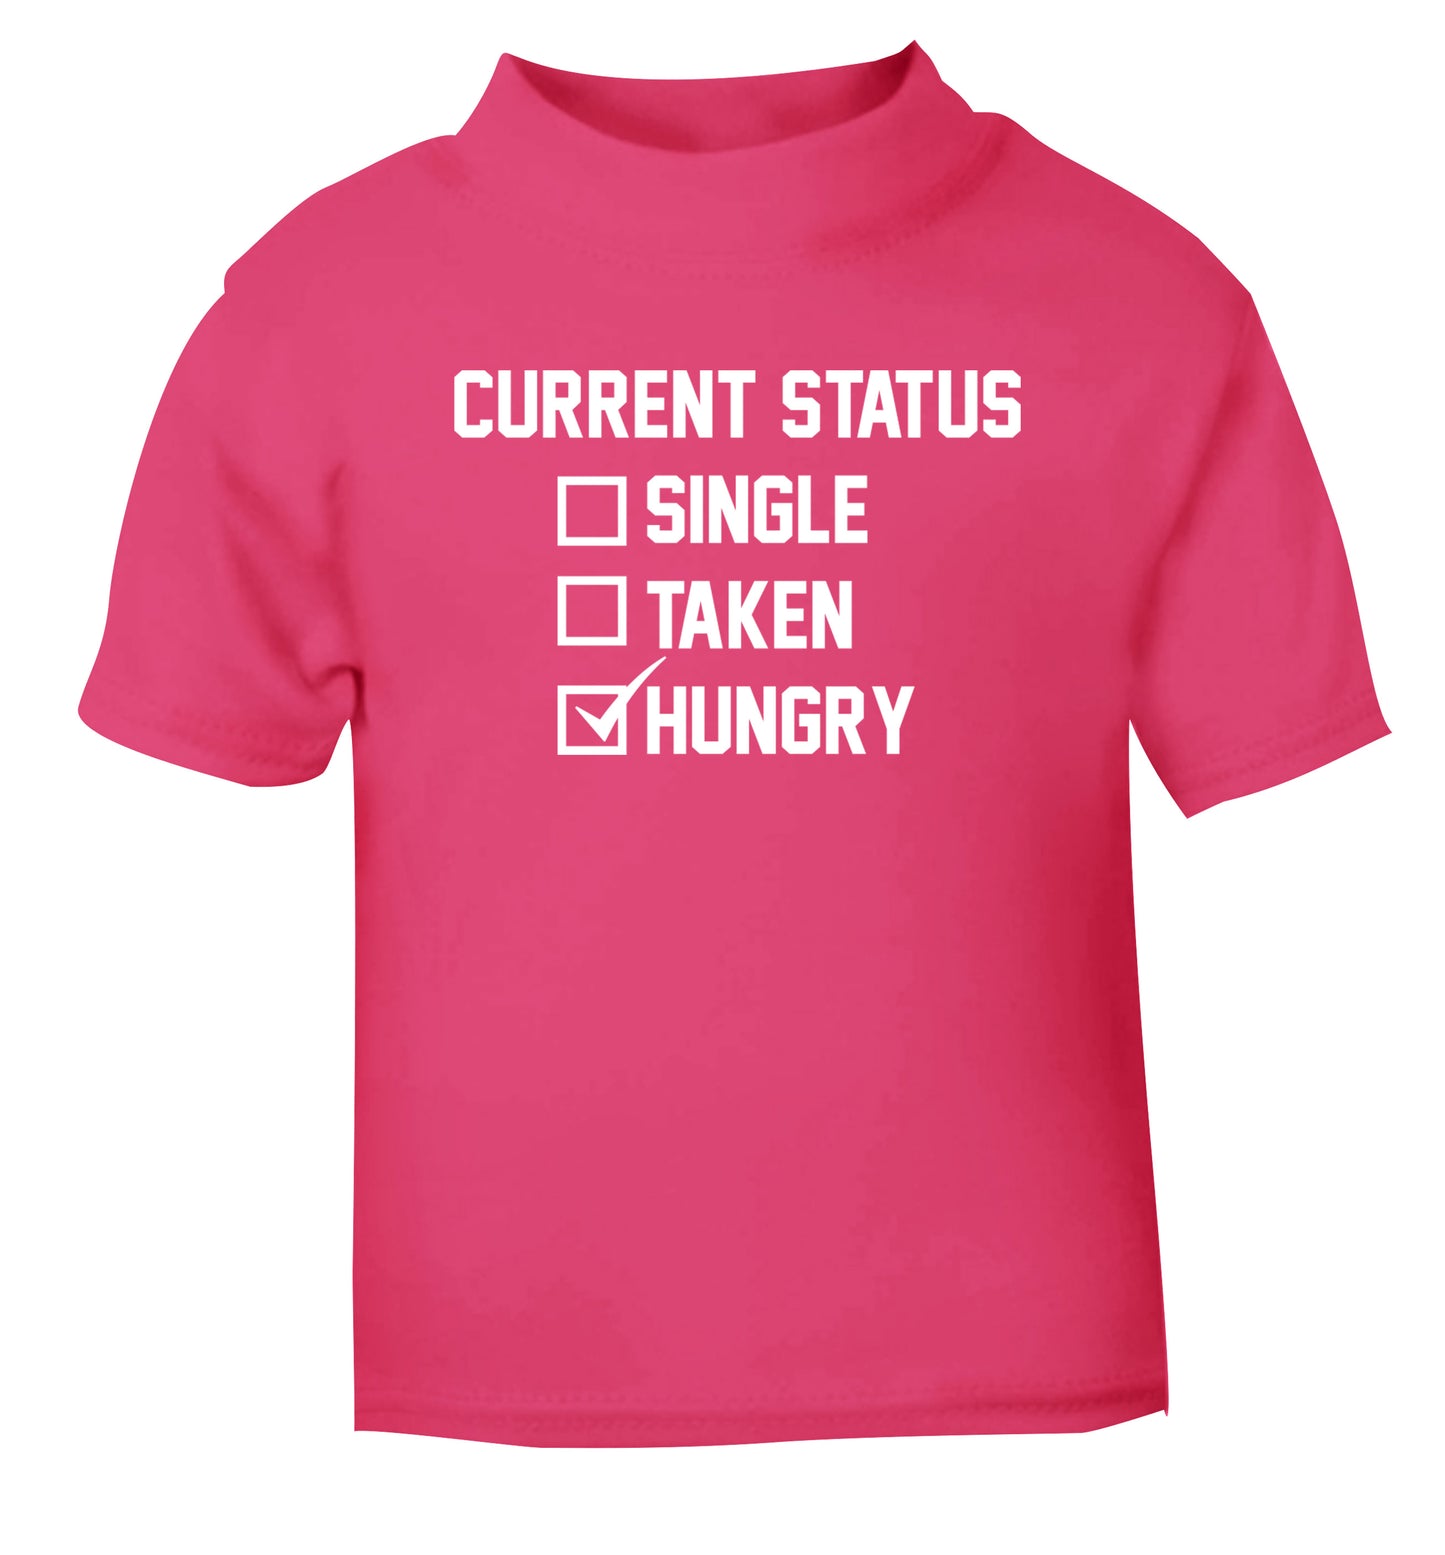 Relationship status single taken hungry pink Baby Toddler Tshirt 2 Years